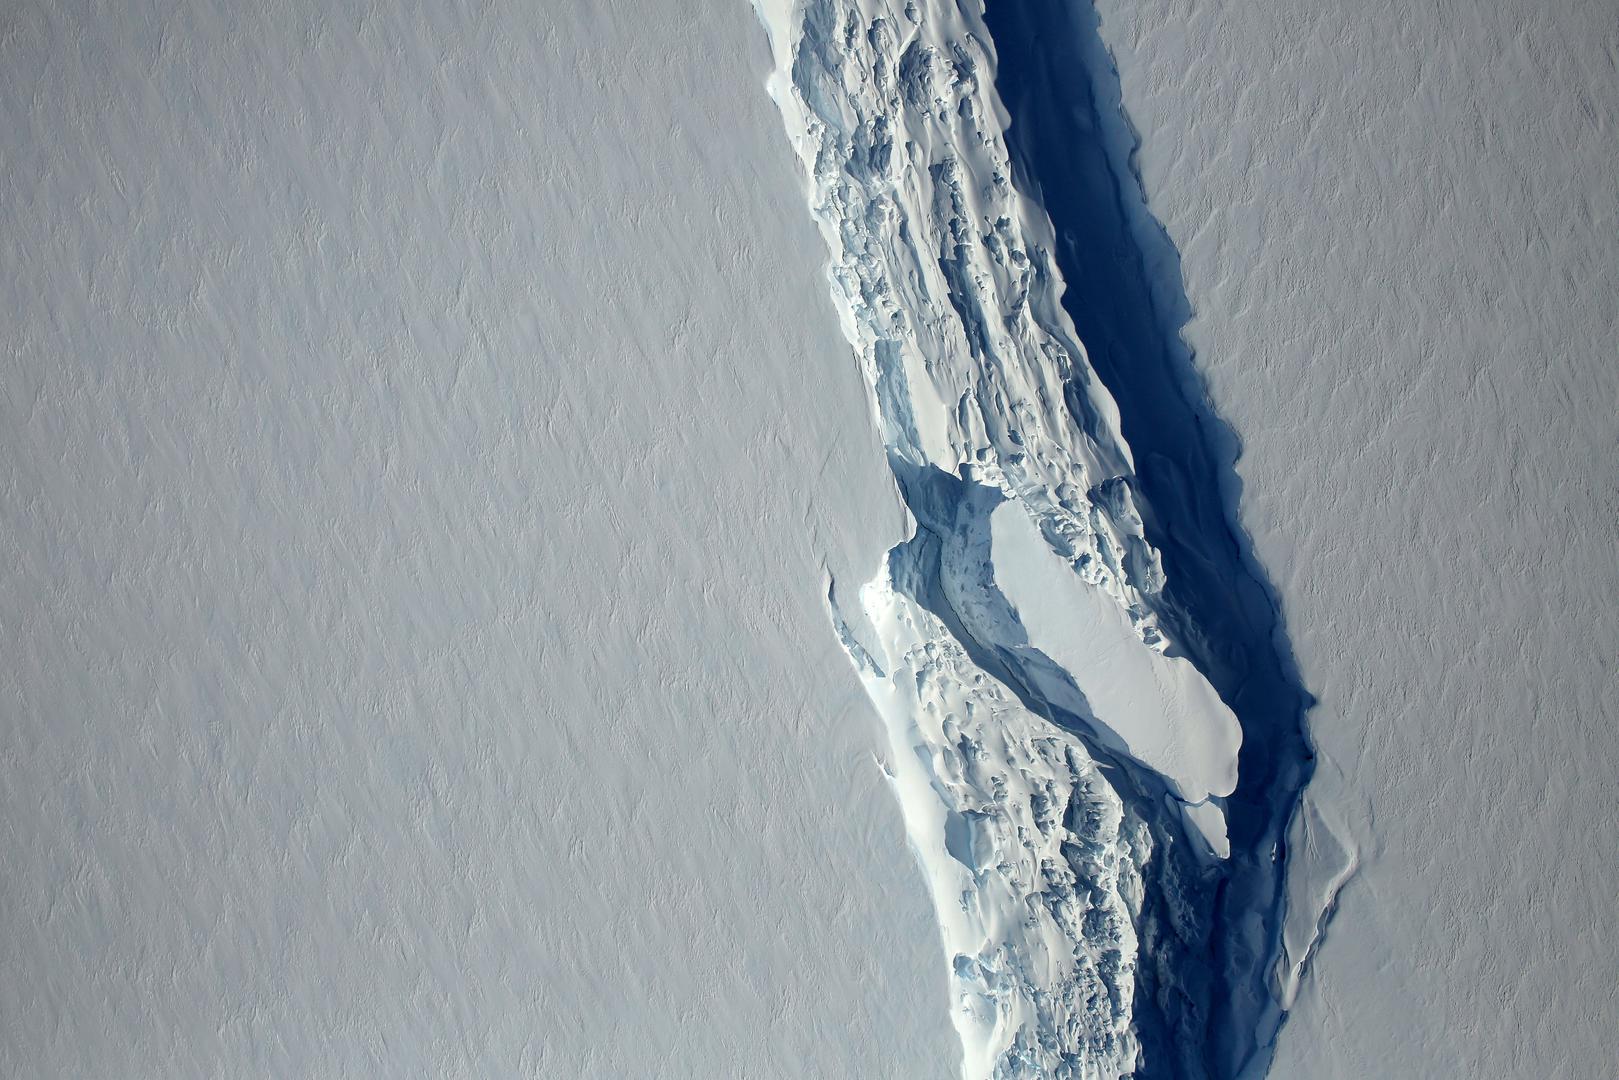 Ledeni grebeni su golemi plutajući komadi leda koje na okupu drže ledenjaci ili ledene ploče.Larsen se sastoji od četiri dijela, od kojih je naveći Larsen C.